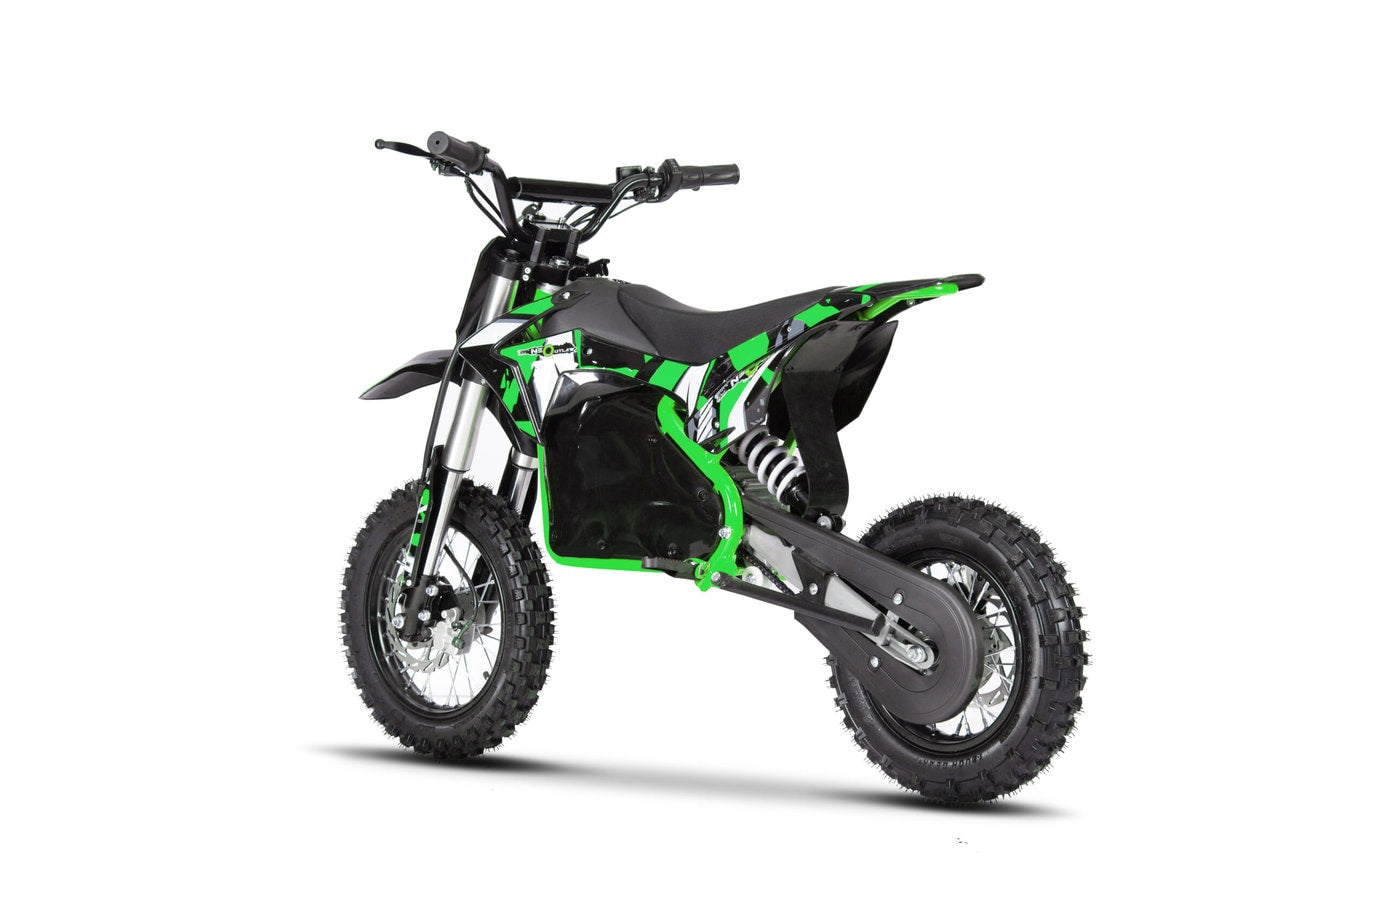 Neo Outlaw 1200W Electric Dirt Bike 48V - Green